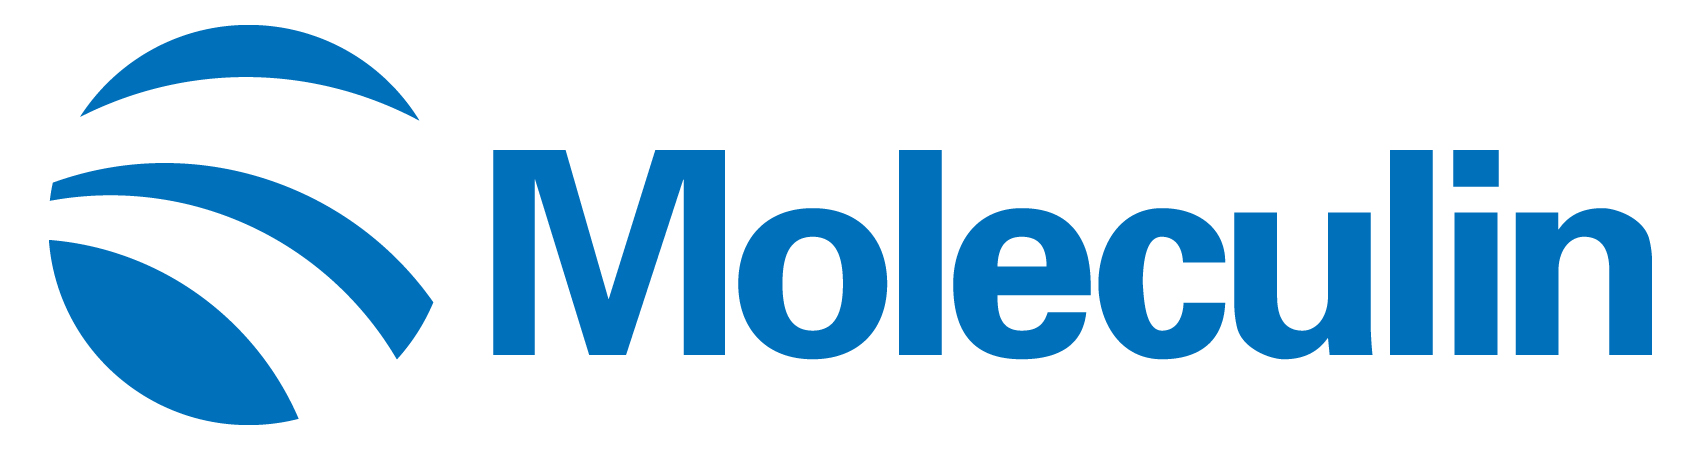 moleculin-logo_horiza51.jpg